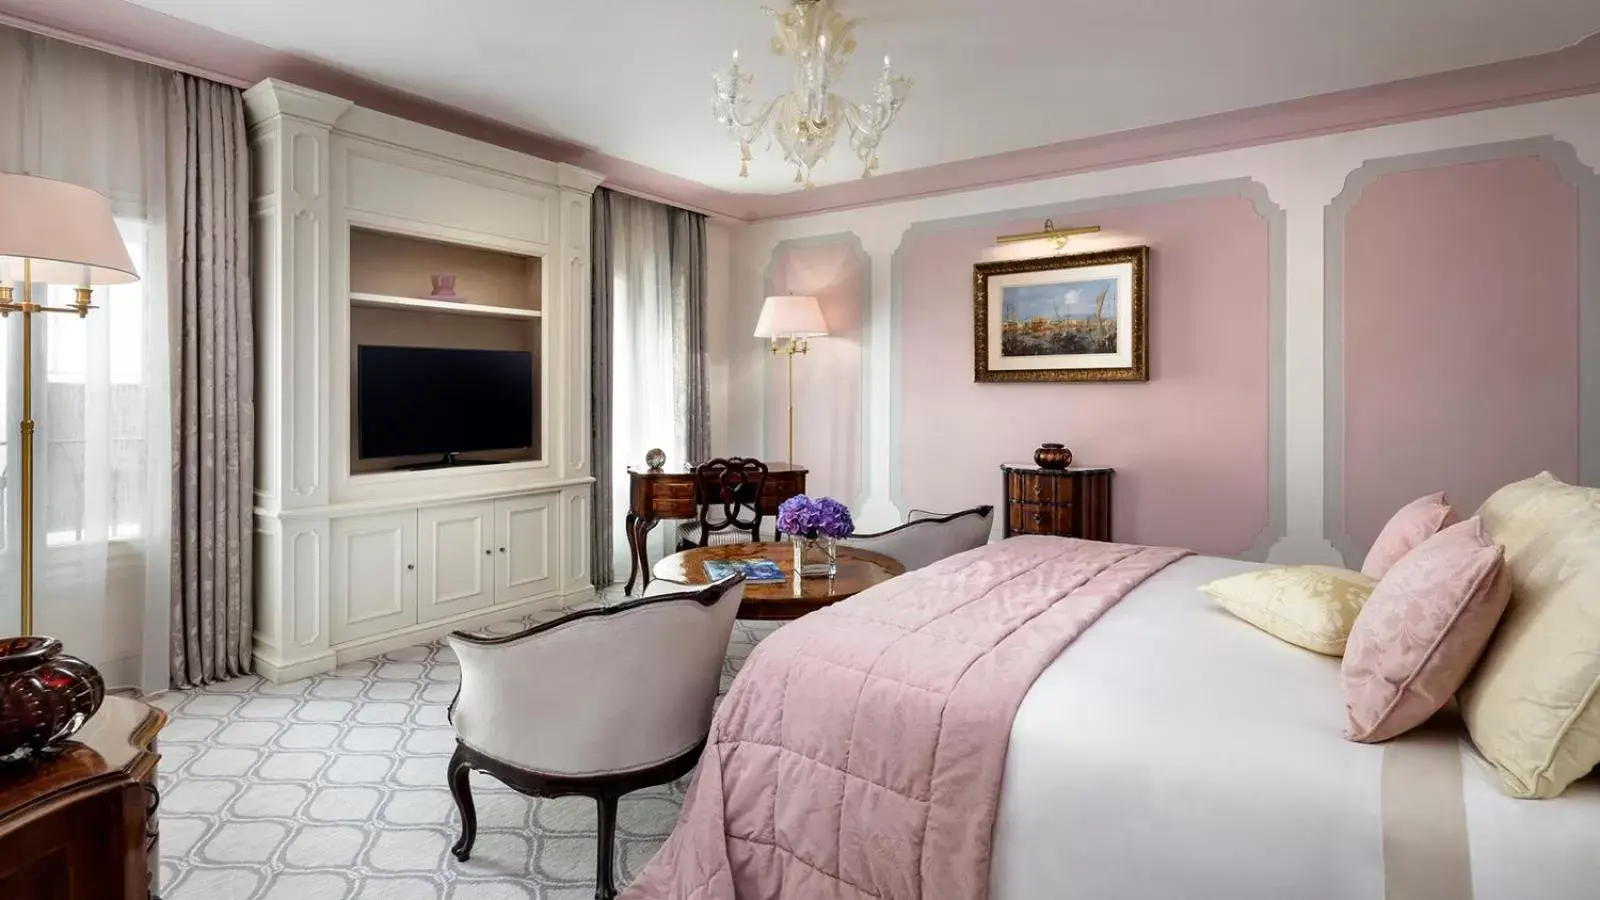 Dandolo Suite, 1 Bedroom Suite, Palazzo Dandolo in Hotel Danieli, Venice